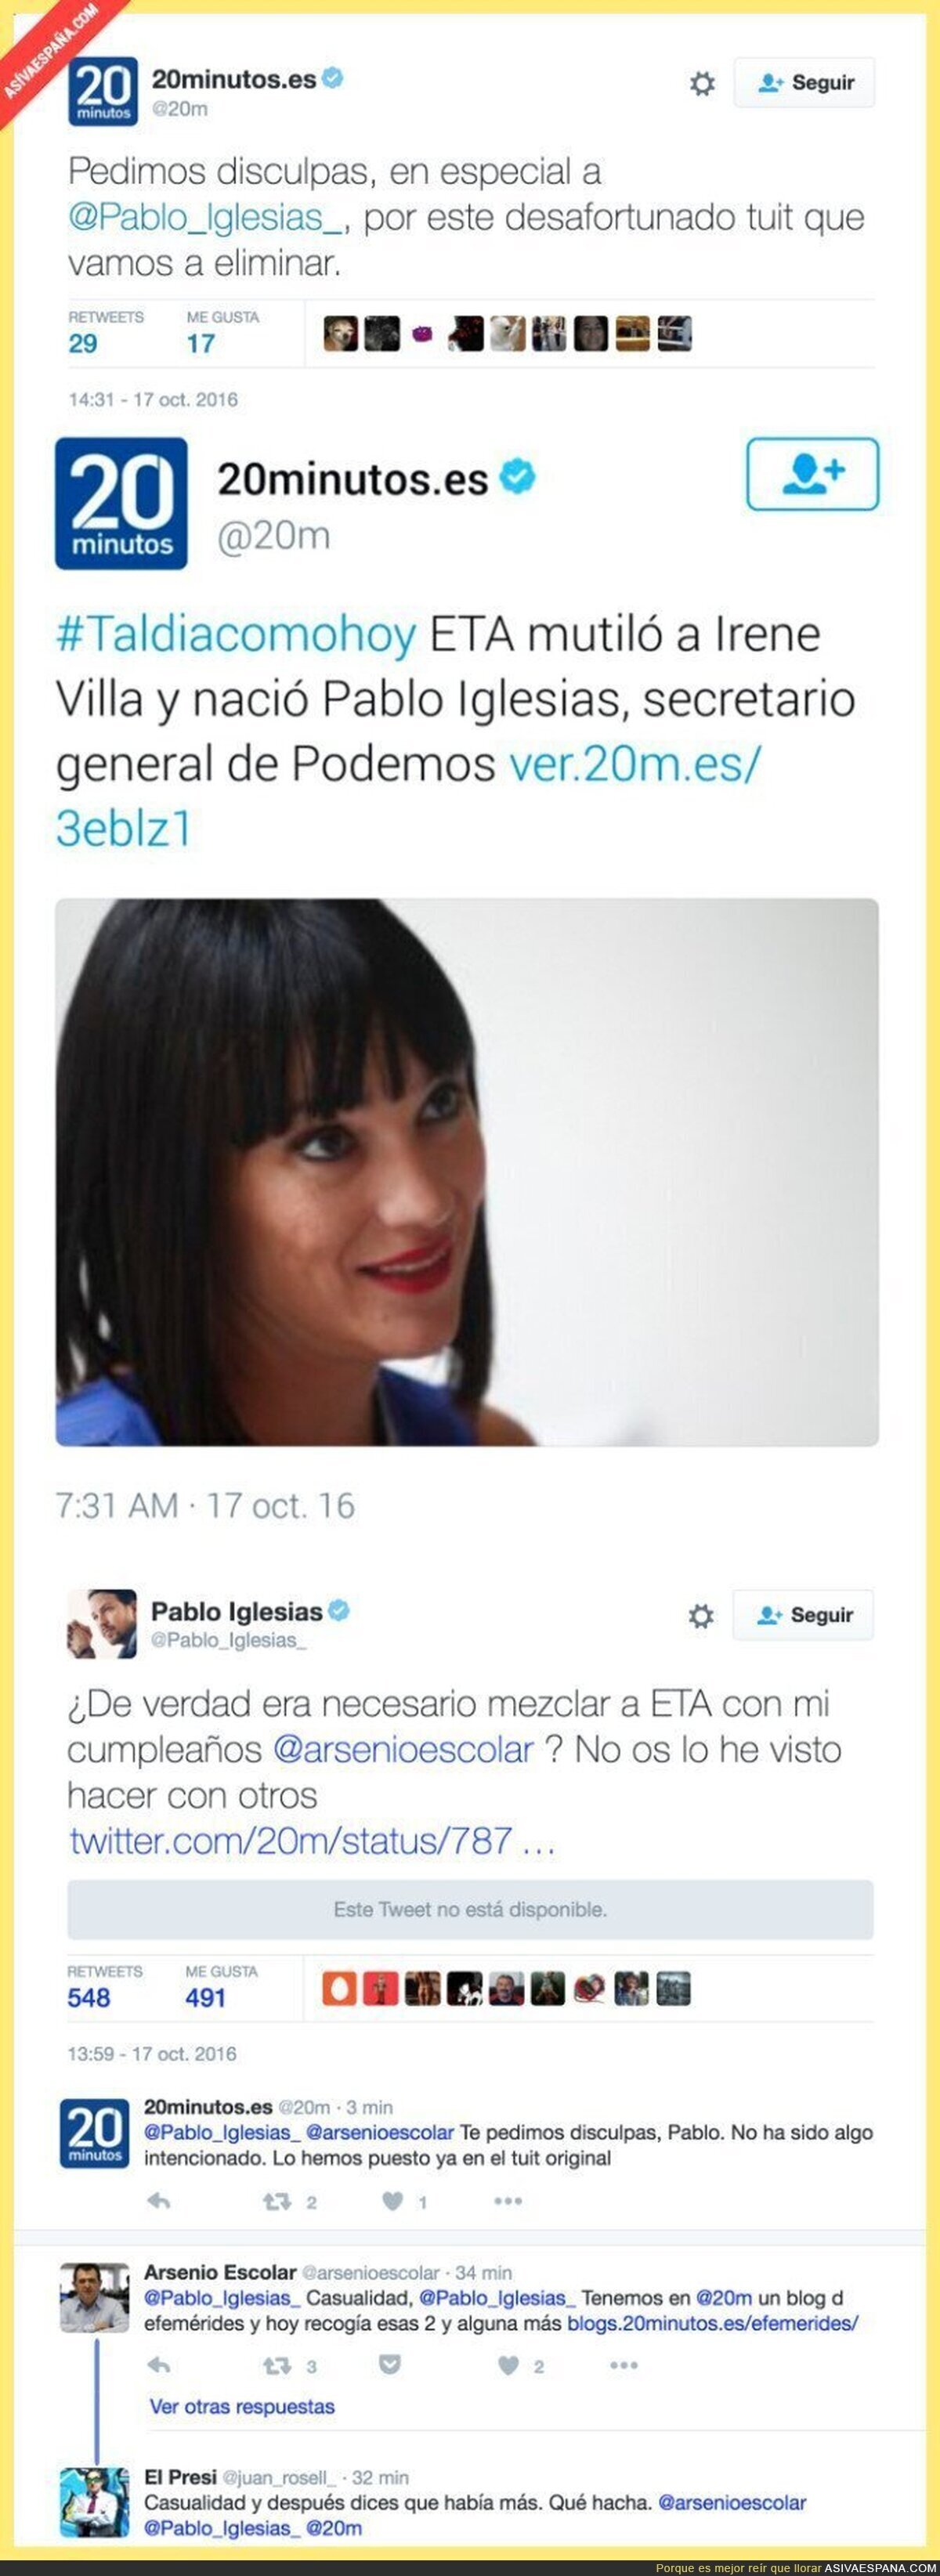 El lamentable tuit de 20minutos relacionando a Pablo Iglesias y ETA